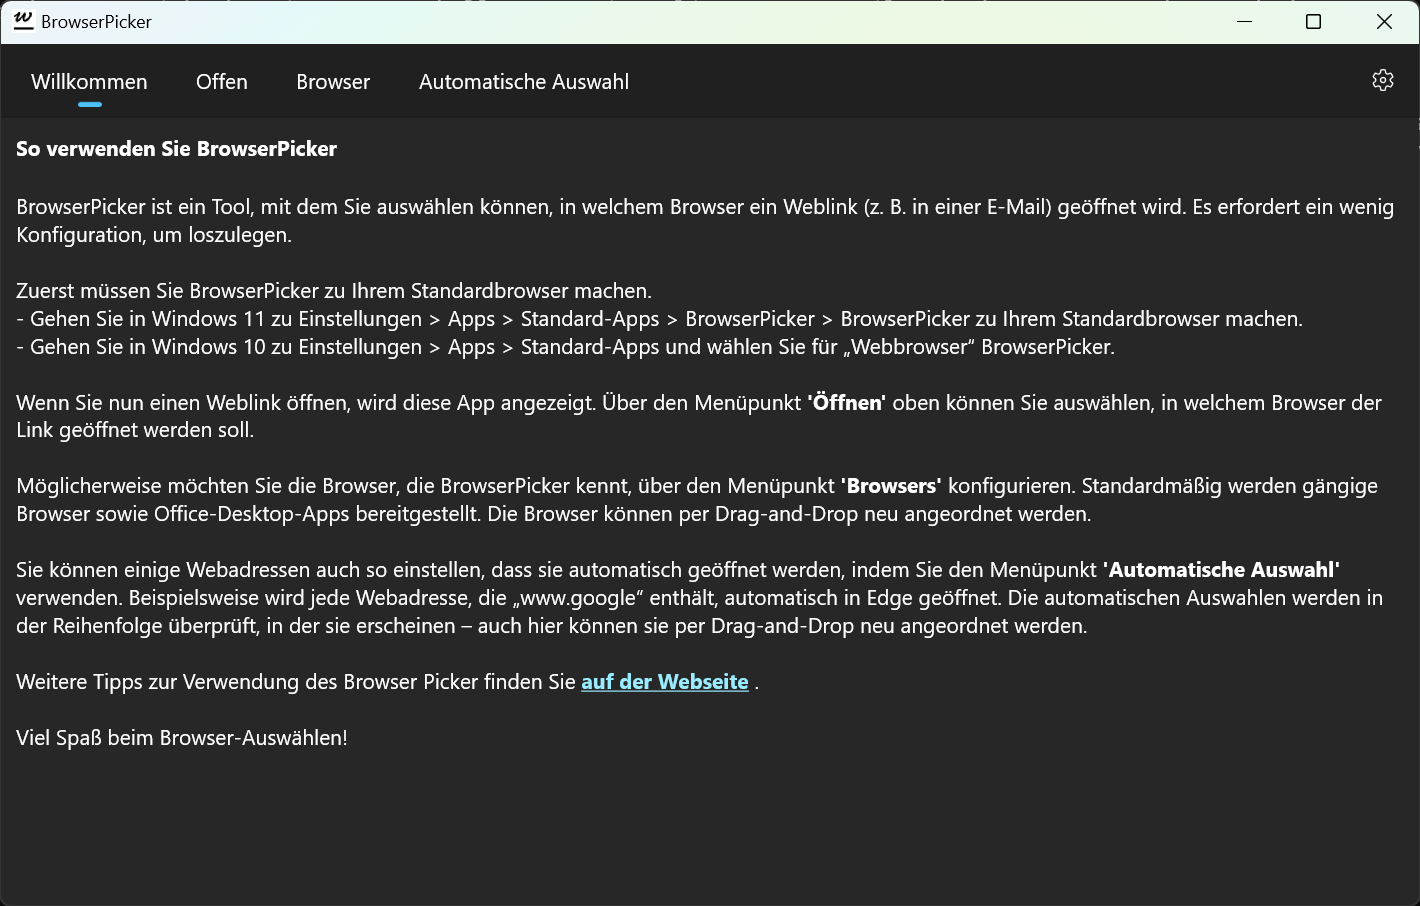 BrowserPicker - Willkommensseite mit grundlegenden Anweisungen zur Verwendung (dunkler Modus).